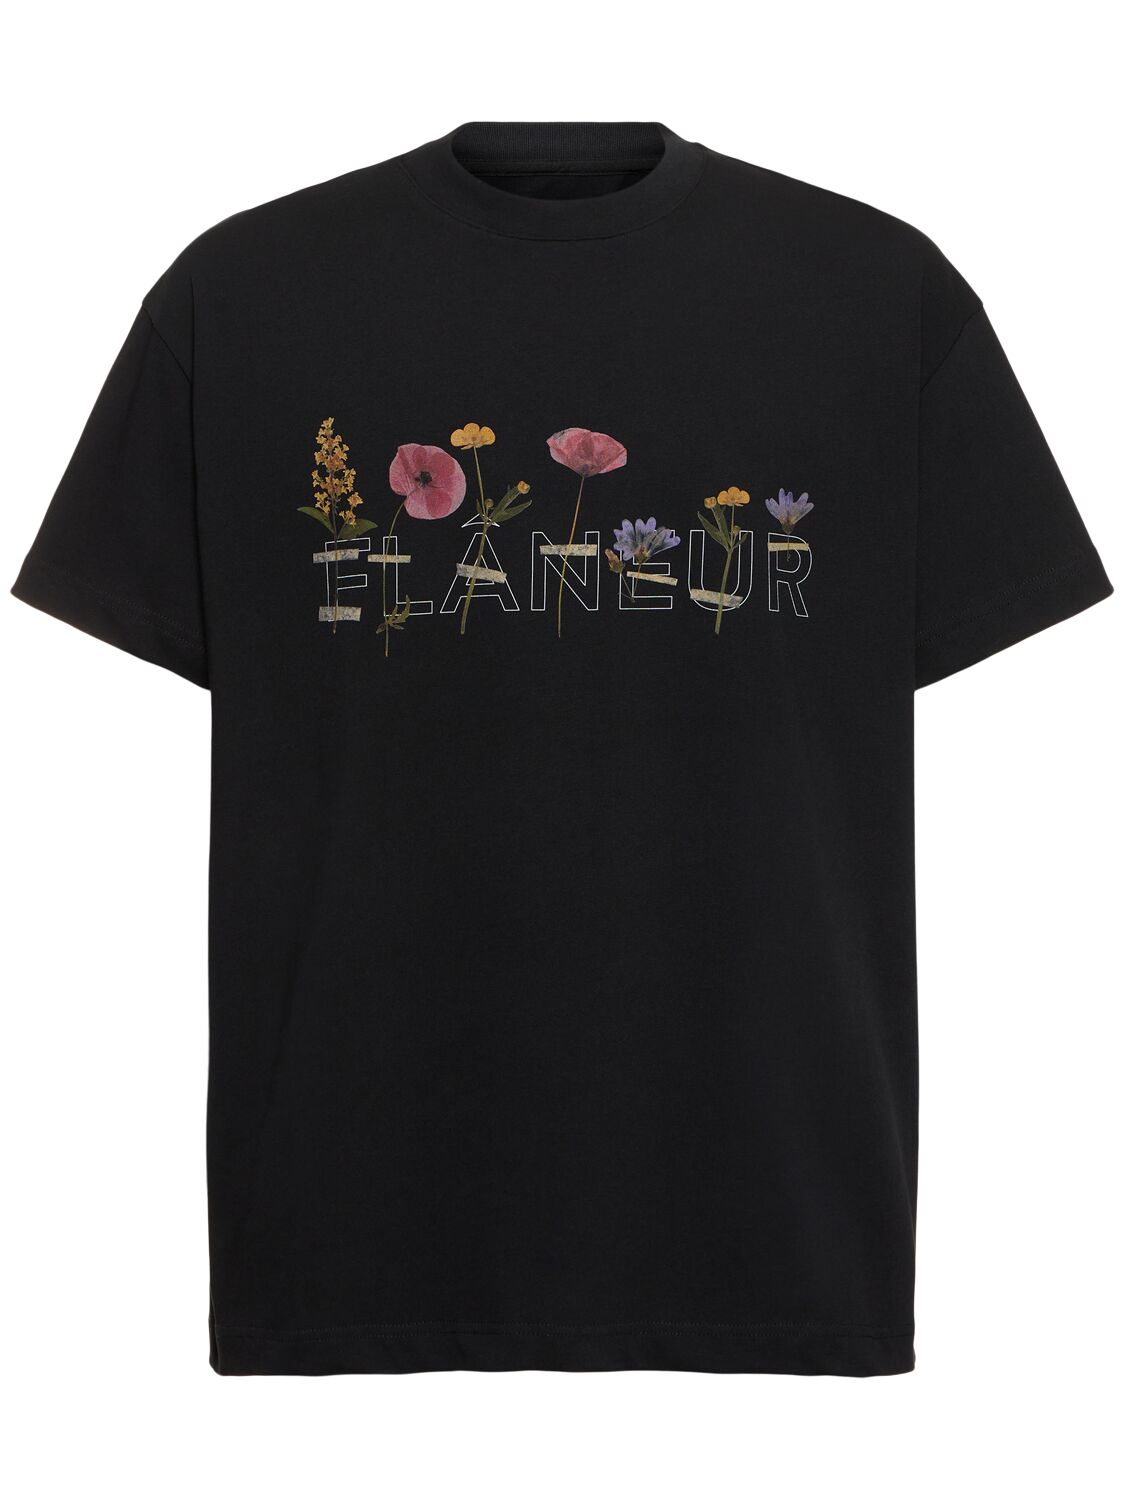 Botanical T-shirt